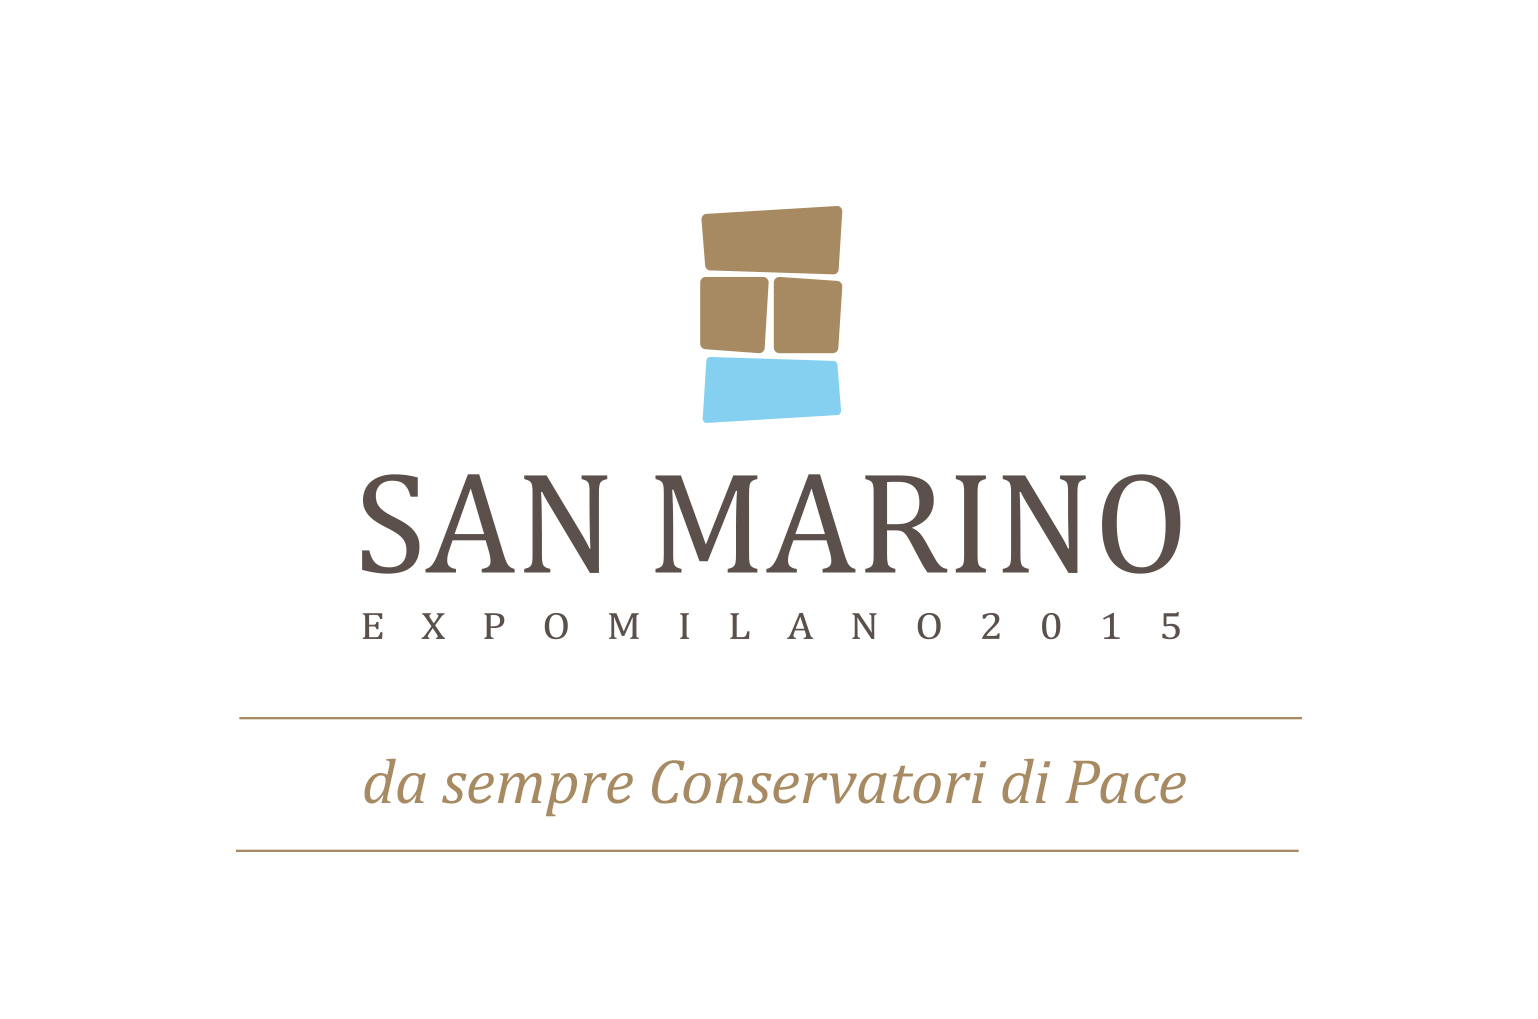 Progettazione stand e comunicazione per San Marino Expo 2015